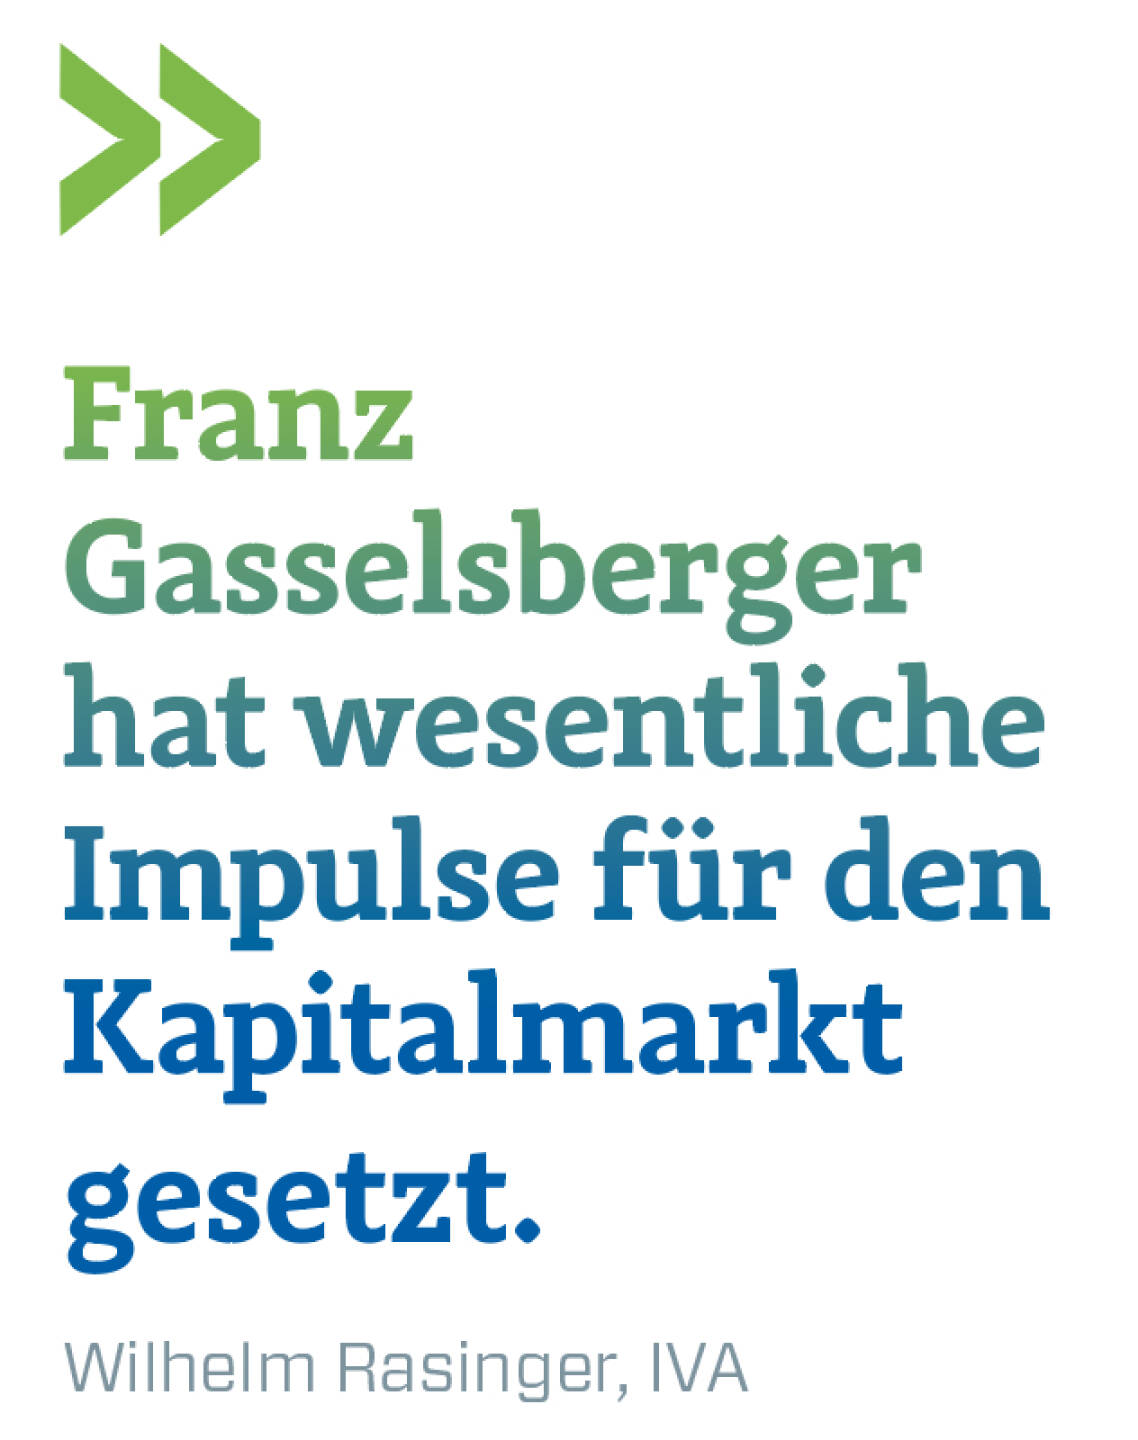 Franz Gasselsberger hat wesentliche Impulse für den Kapitalmarkt gesetzt.
Wilhelm Rasinger, IVA